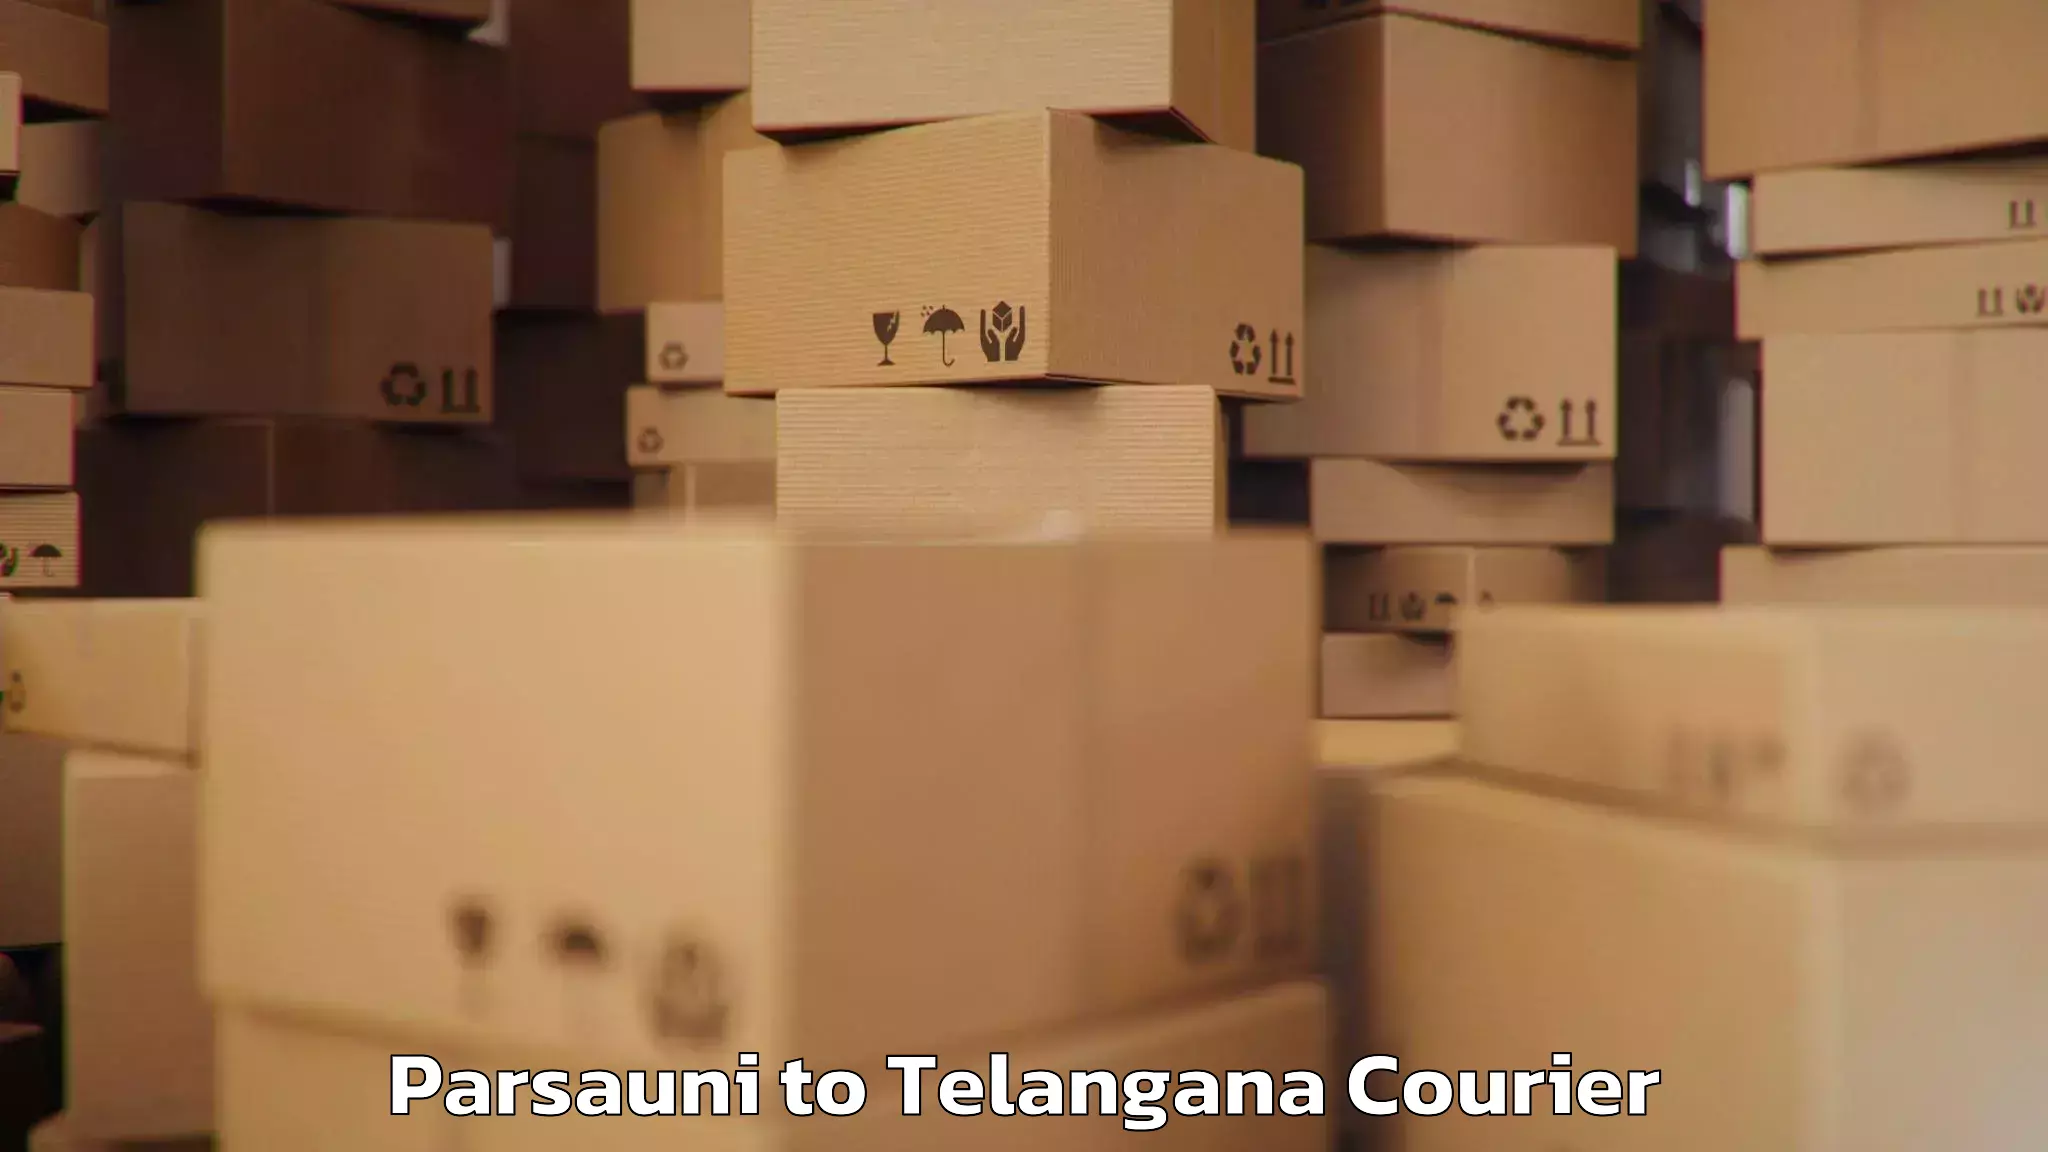 Baggage transport services Parsauni to Telangana